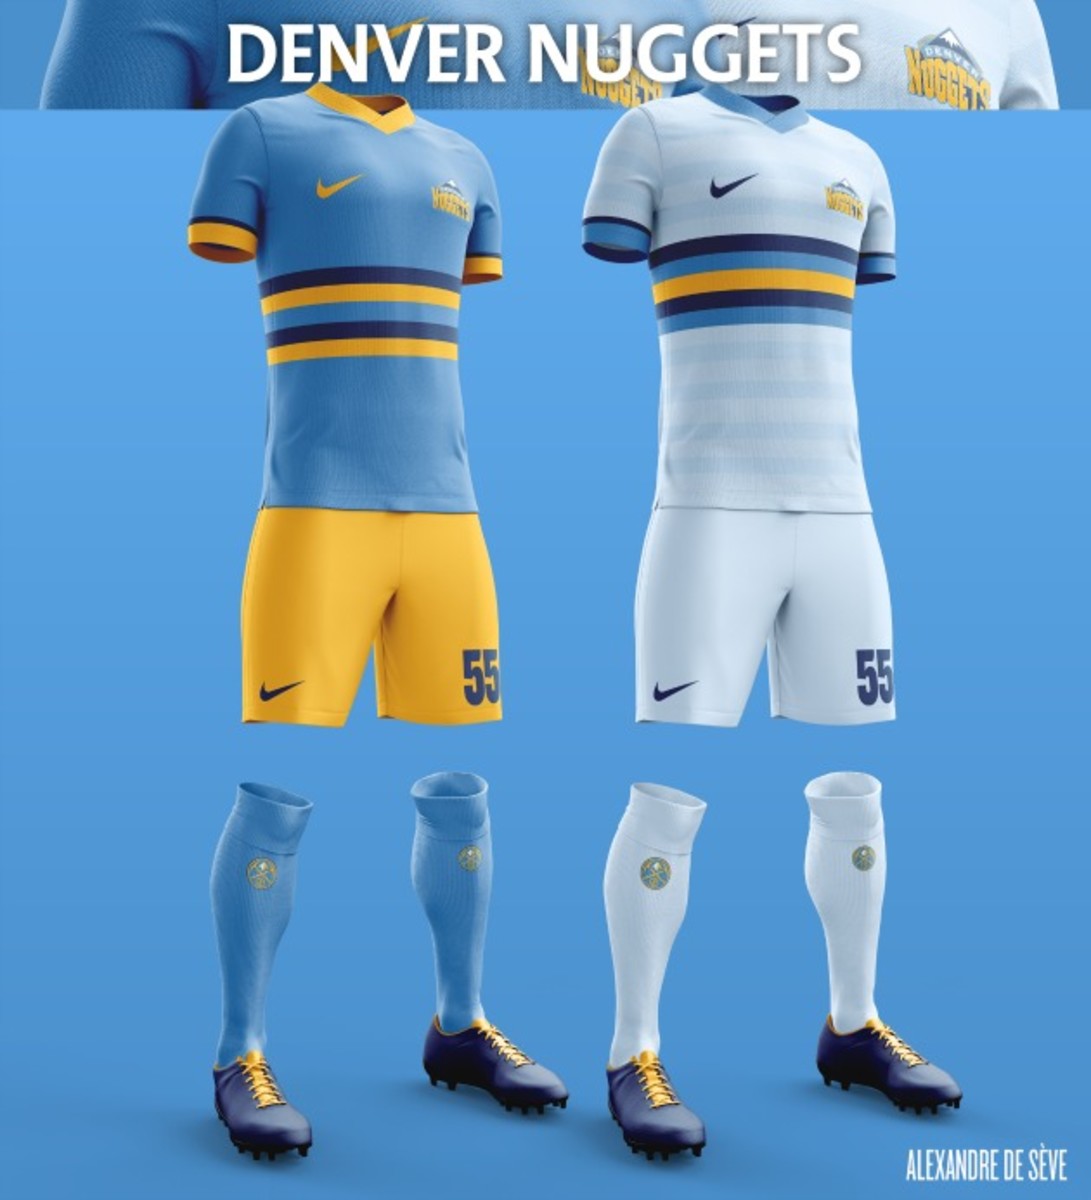 Denver-nuggets-soccer.jpg